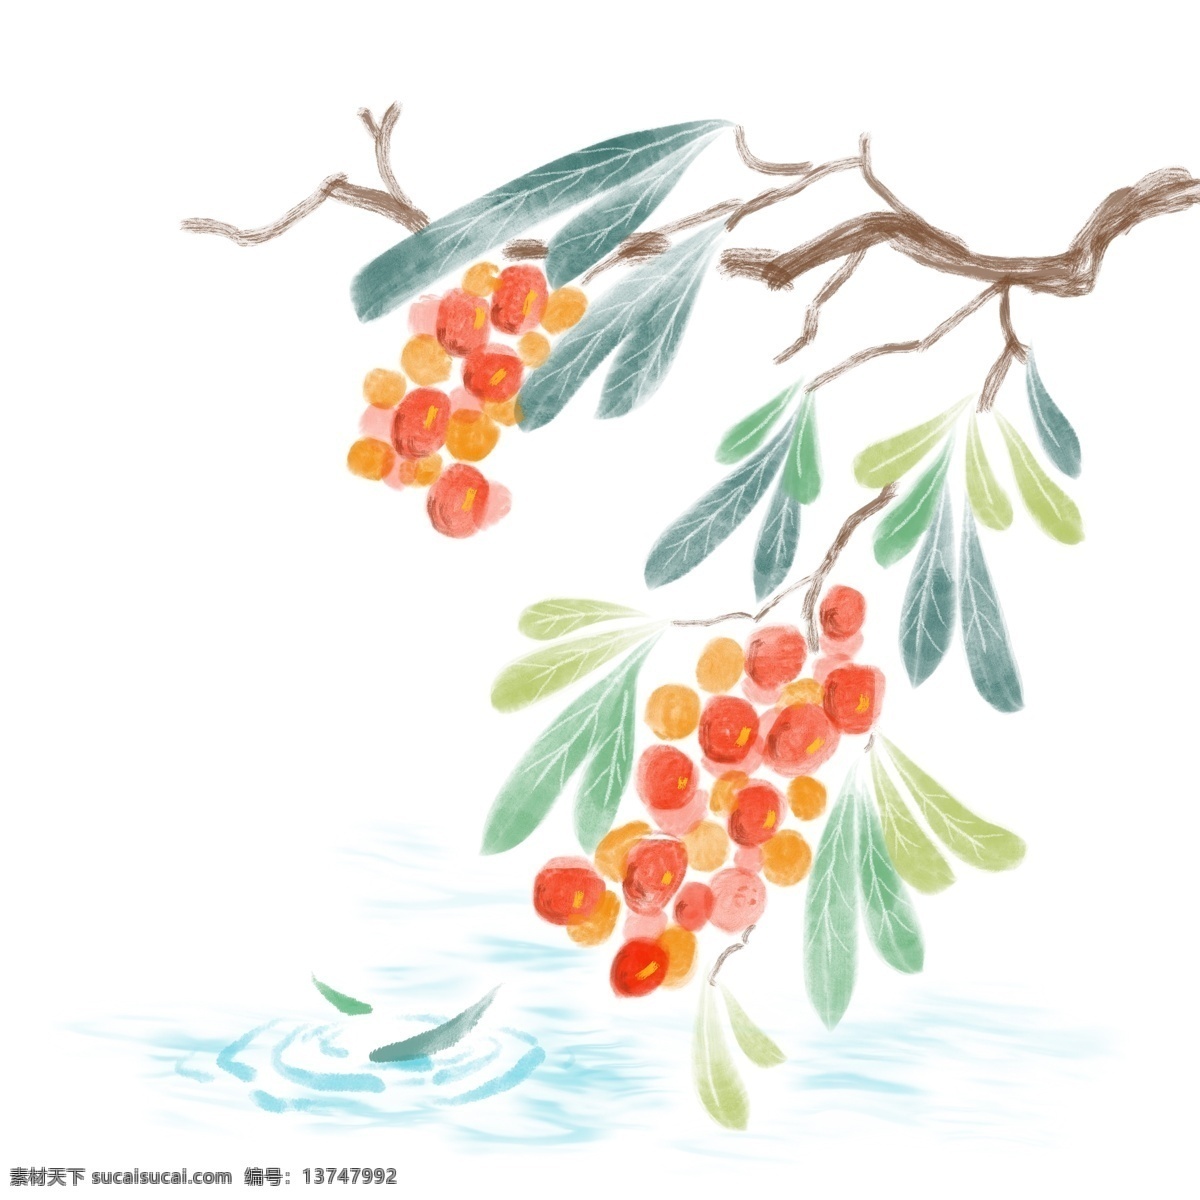 水墨 果实 树枝 插画 红色的果实 水墨果实 食物 卡通插画 成熟的果实 果子 绿叶装饰 枝条 水墨画